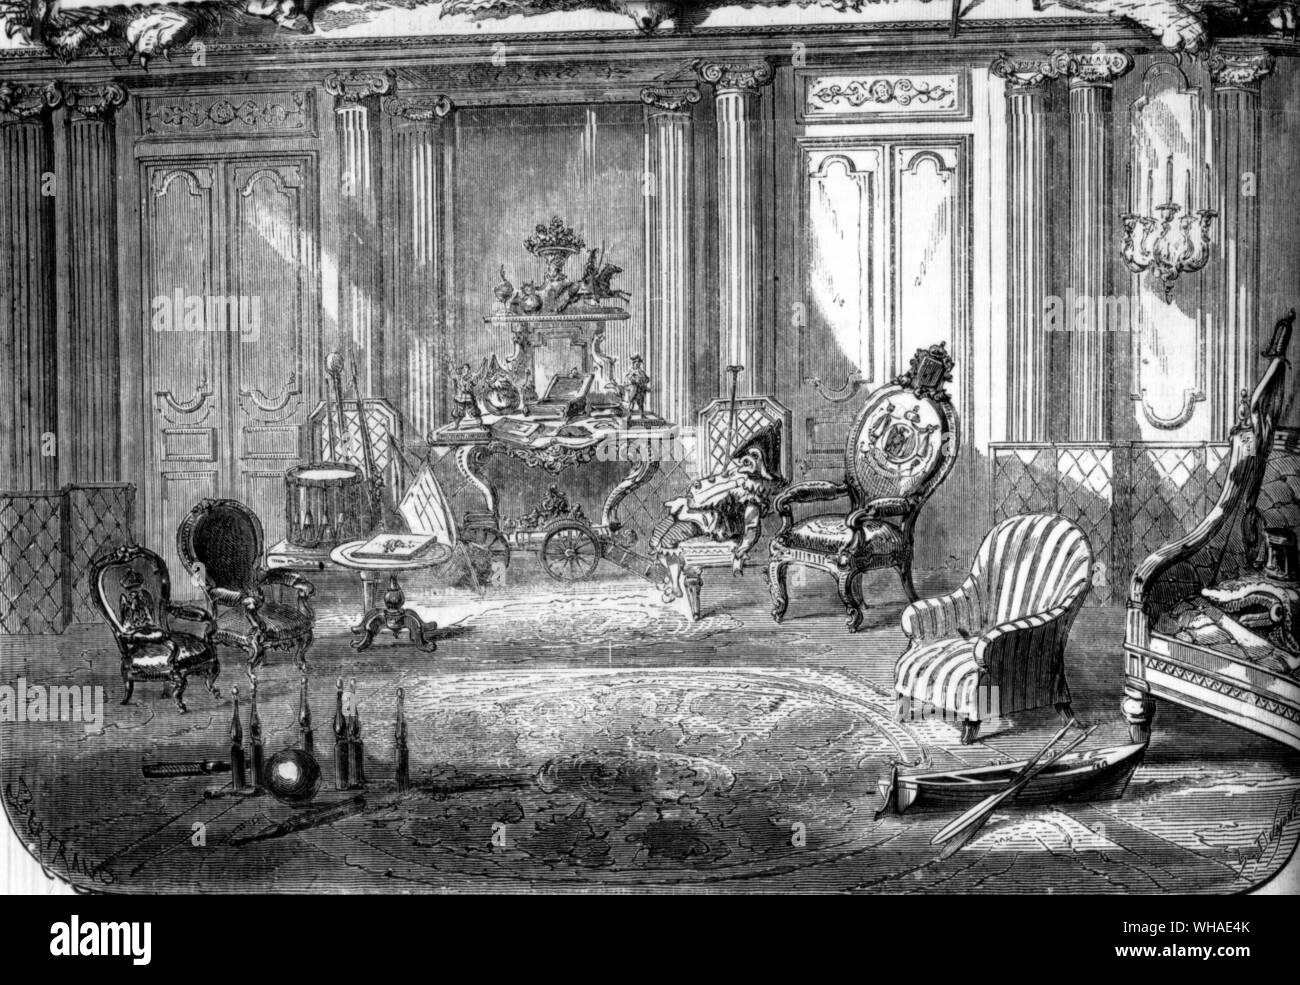 Le Monde illustre 21 janvier 1860. Le Prince Impérial (fils de Napoléon III) vacances au palais des Tuileries Banque D'Images